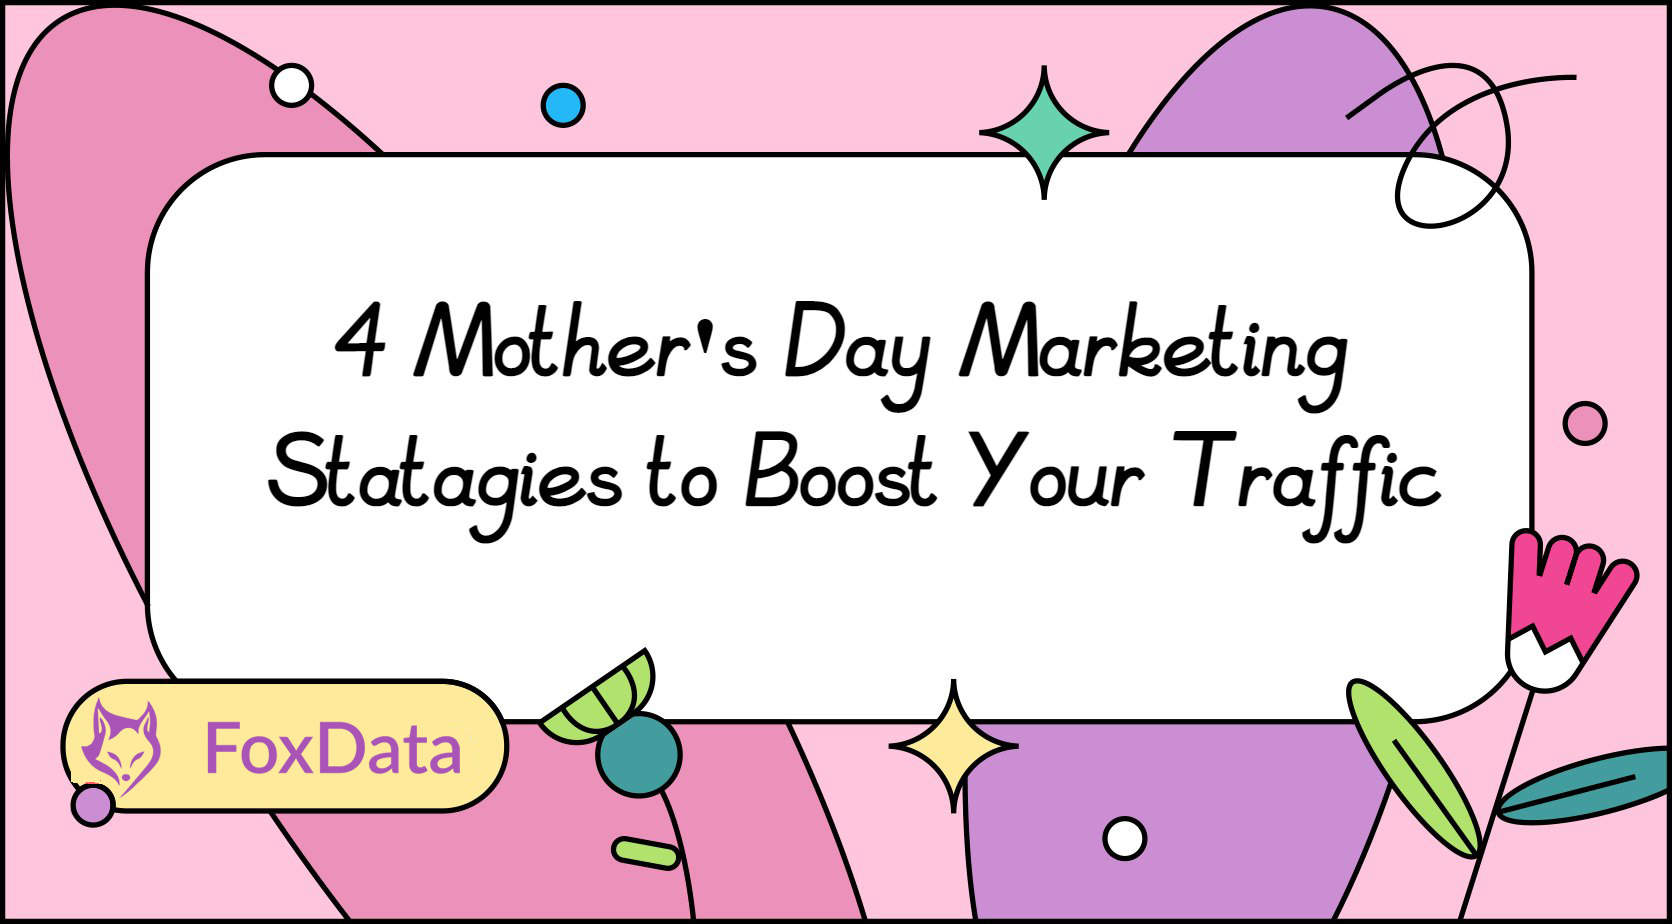 Stratégies marketing pour la fête des mères 